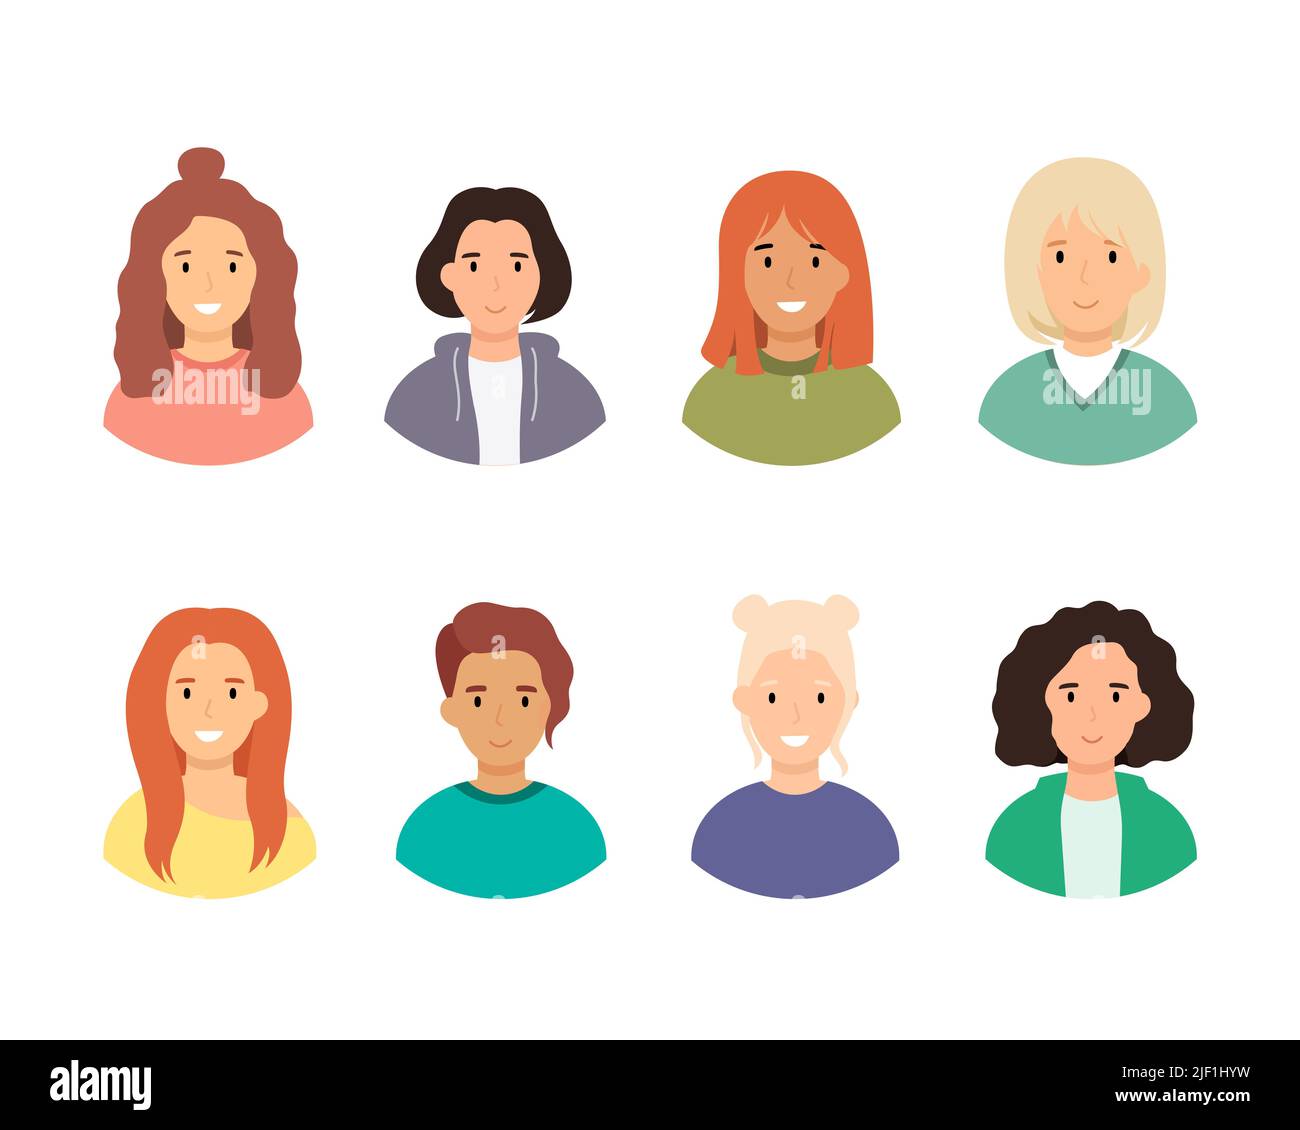 Portraits de femmes de différentes coiffures. Personnages femelles d'avatars isolés sur fond blanc. Illustration vectorielle plate Illustration de Vecteur